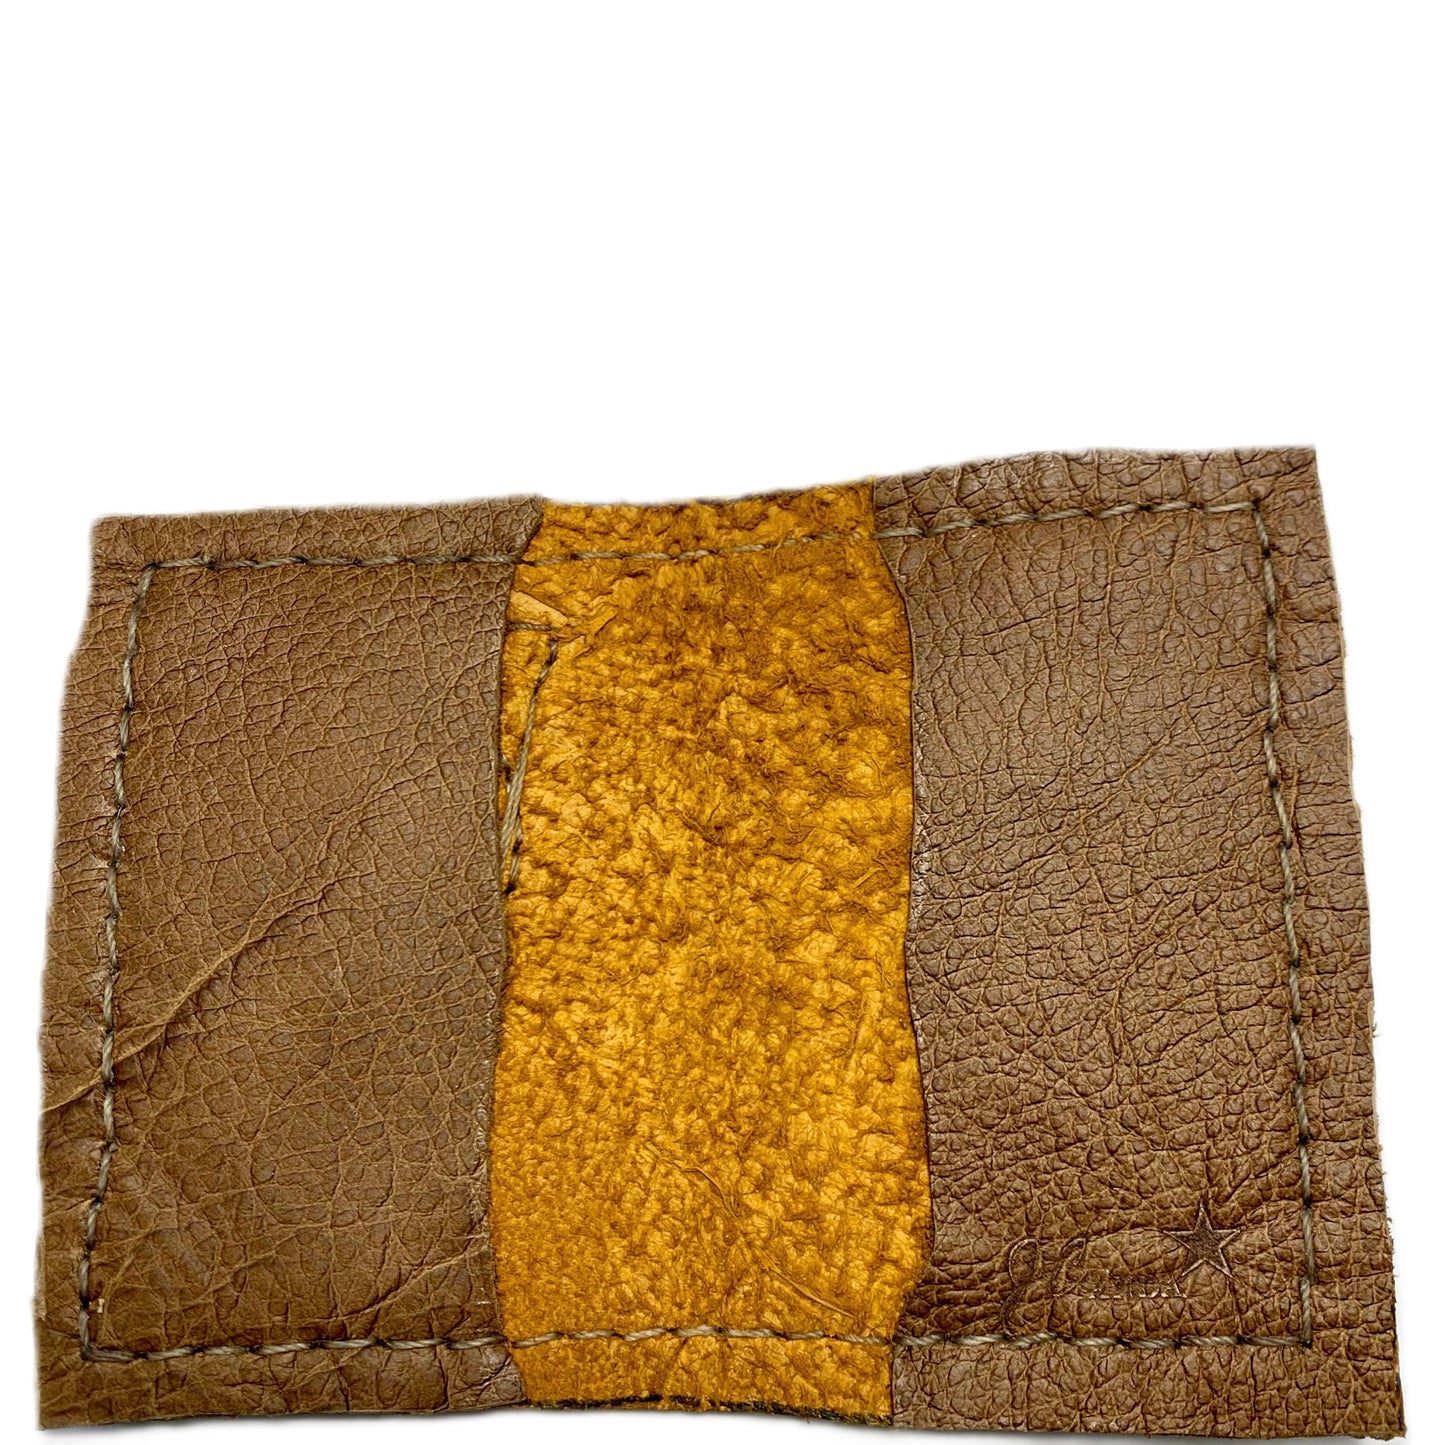 JCAnda Leather Wallet: Delight